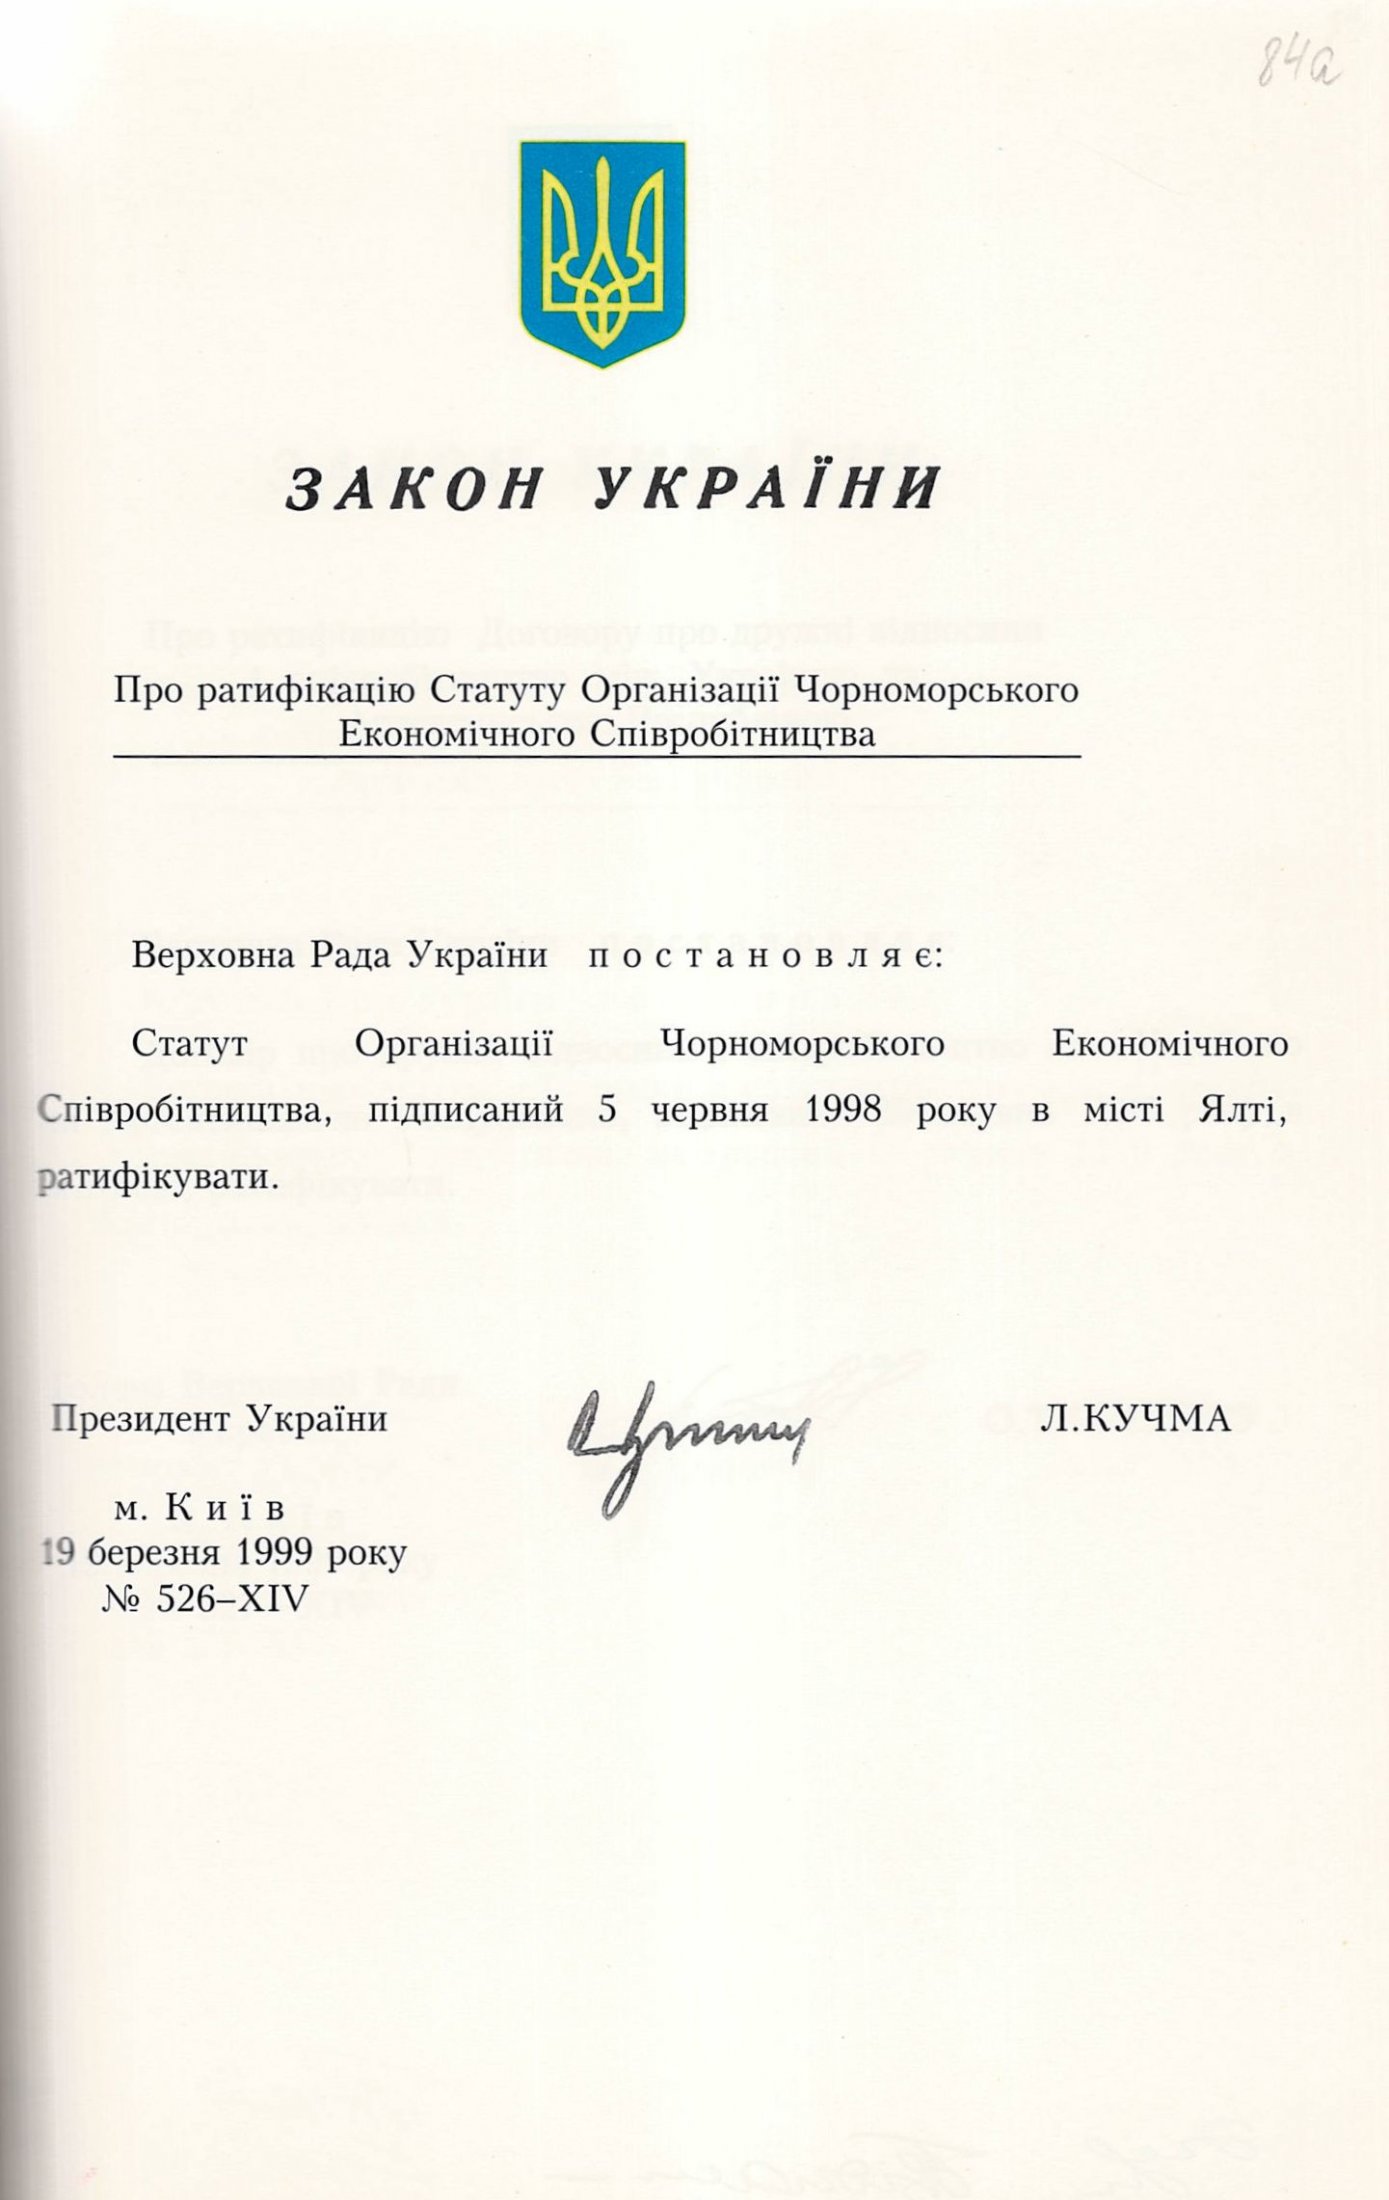 Закон України № 526-ХІV «Про Статут Організації Чорноморського Економічного Співробітництва». 19 березня 1999 р.